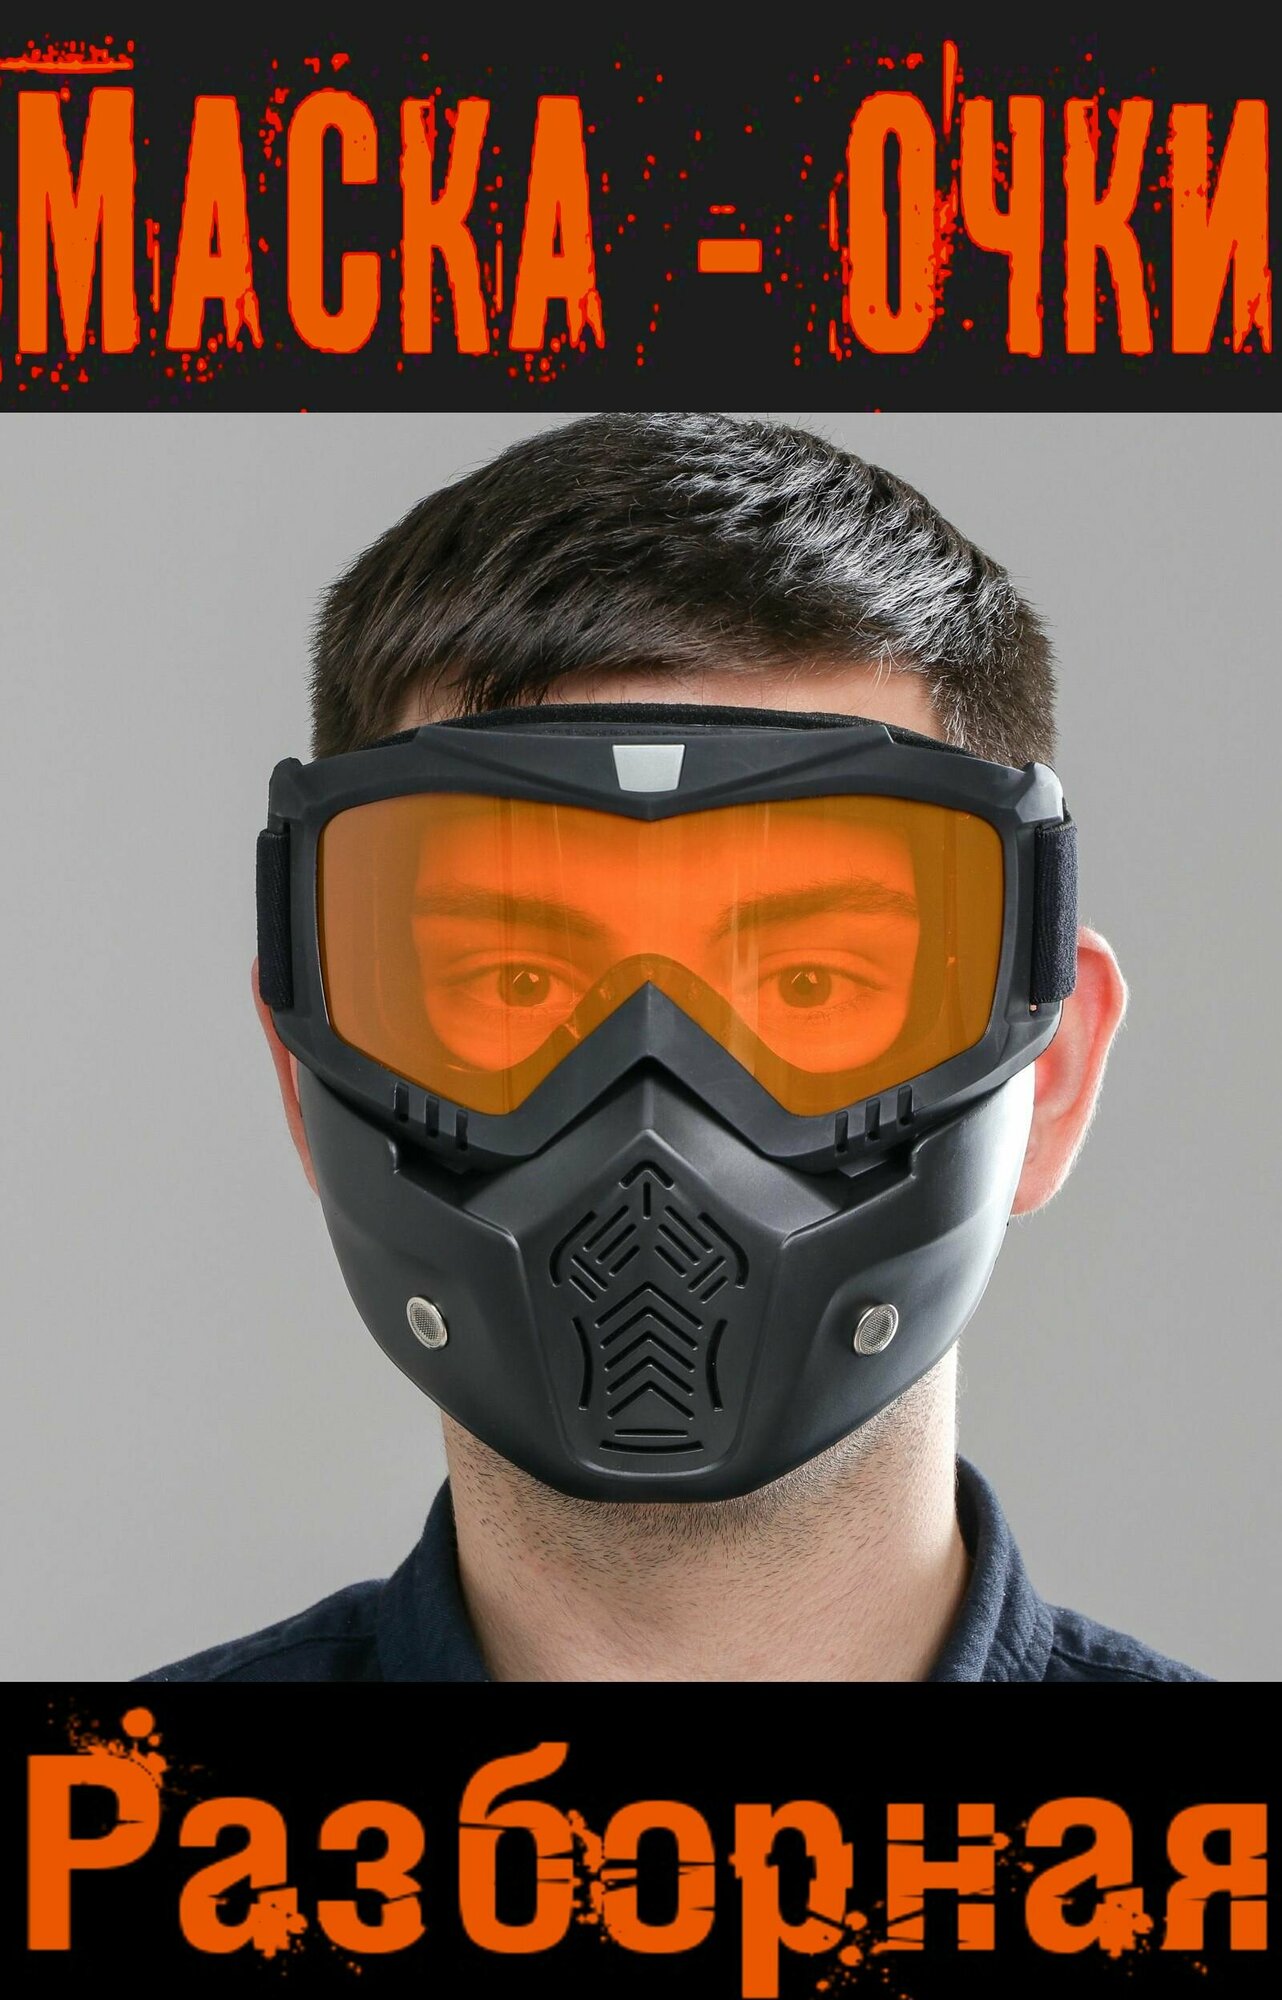 Очки - маска для езды на сноуборде лыжах снегоходе квадроцикле мототехнике разборные цвет стекла - оранжевый без затемнения